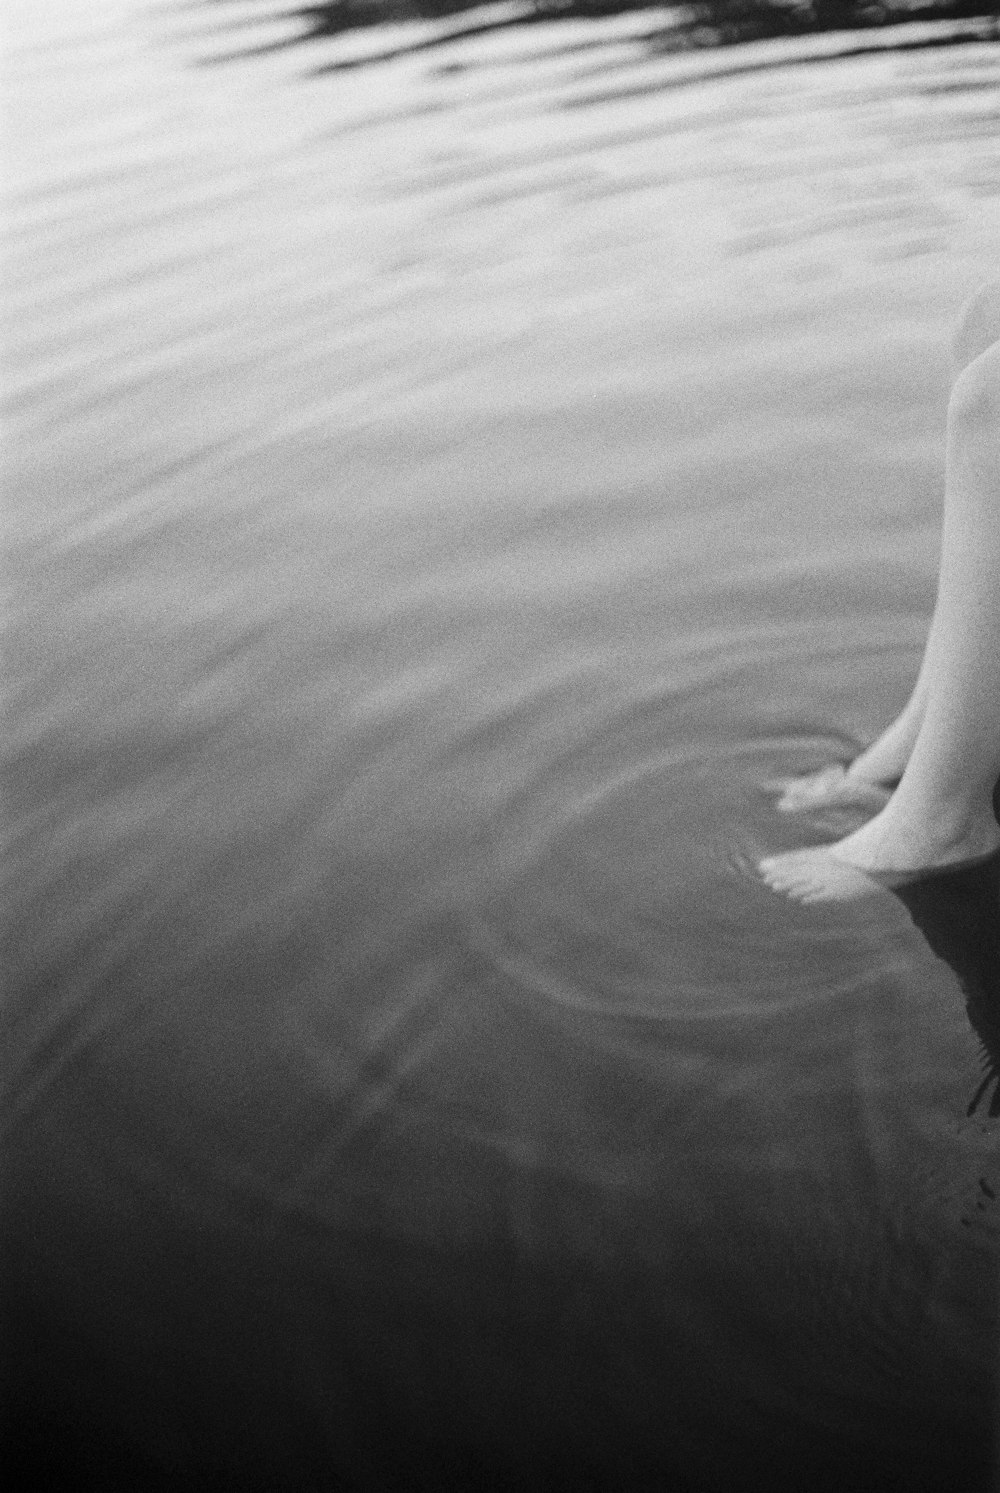 Una foto in bianco e nero delle gambe di una persona nell'acqua